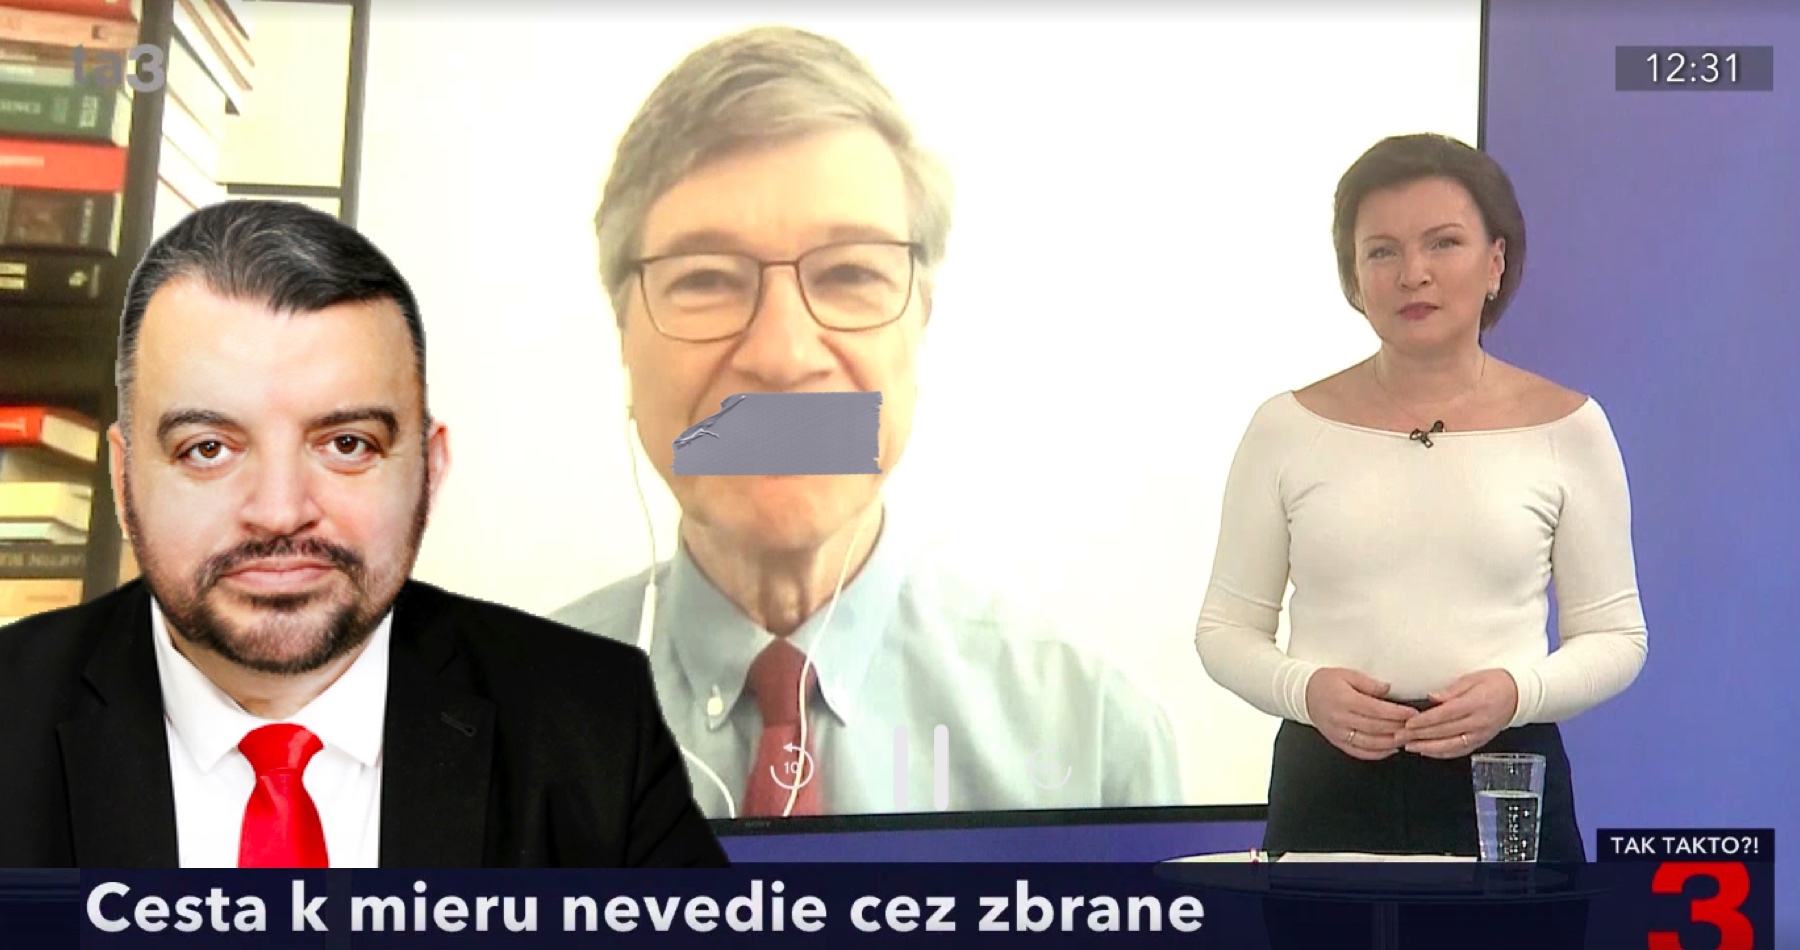 Chmelár o cenzúre jedného z najprominentnejších svetových ekonómov Jeffrey Sachsa, ktorý v spravodajskej televízii povedal pravdu o Ukrajine: TA3 podobne ako iné médiá hlavného prúdu nielenže zamlčiava najzávažnejšie skutočnosti, ale ich už aj cenzuruje a vymazáva tak, aby sa divák nemohol dozvedieť skutočnú pravdu. Otázka znie, na čí príkaz ...